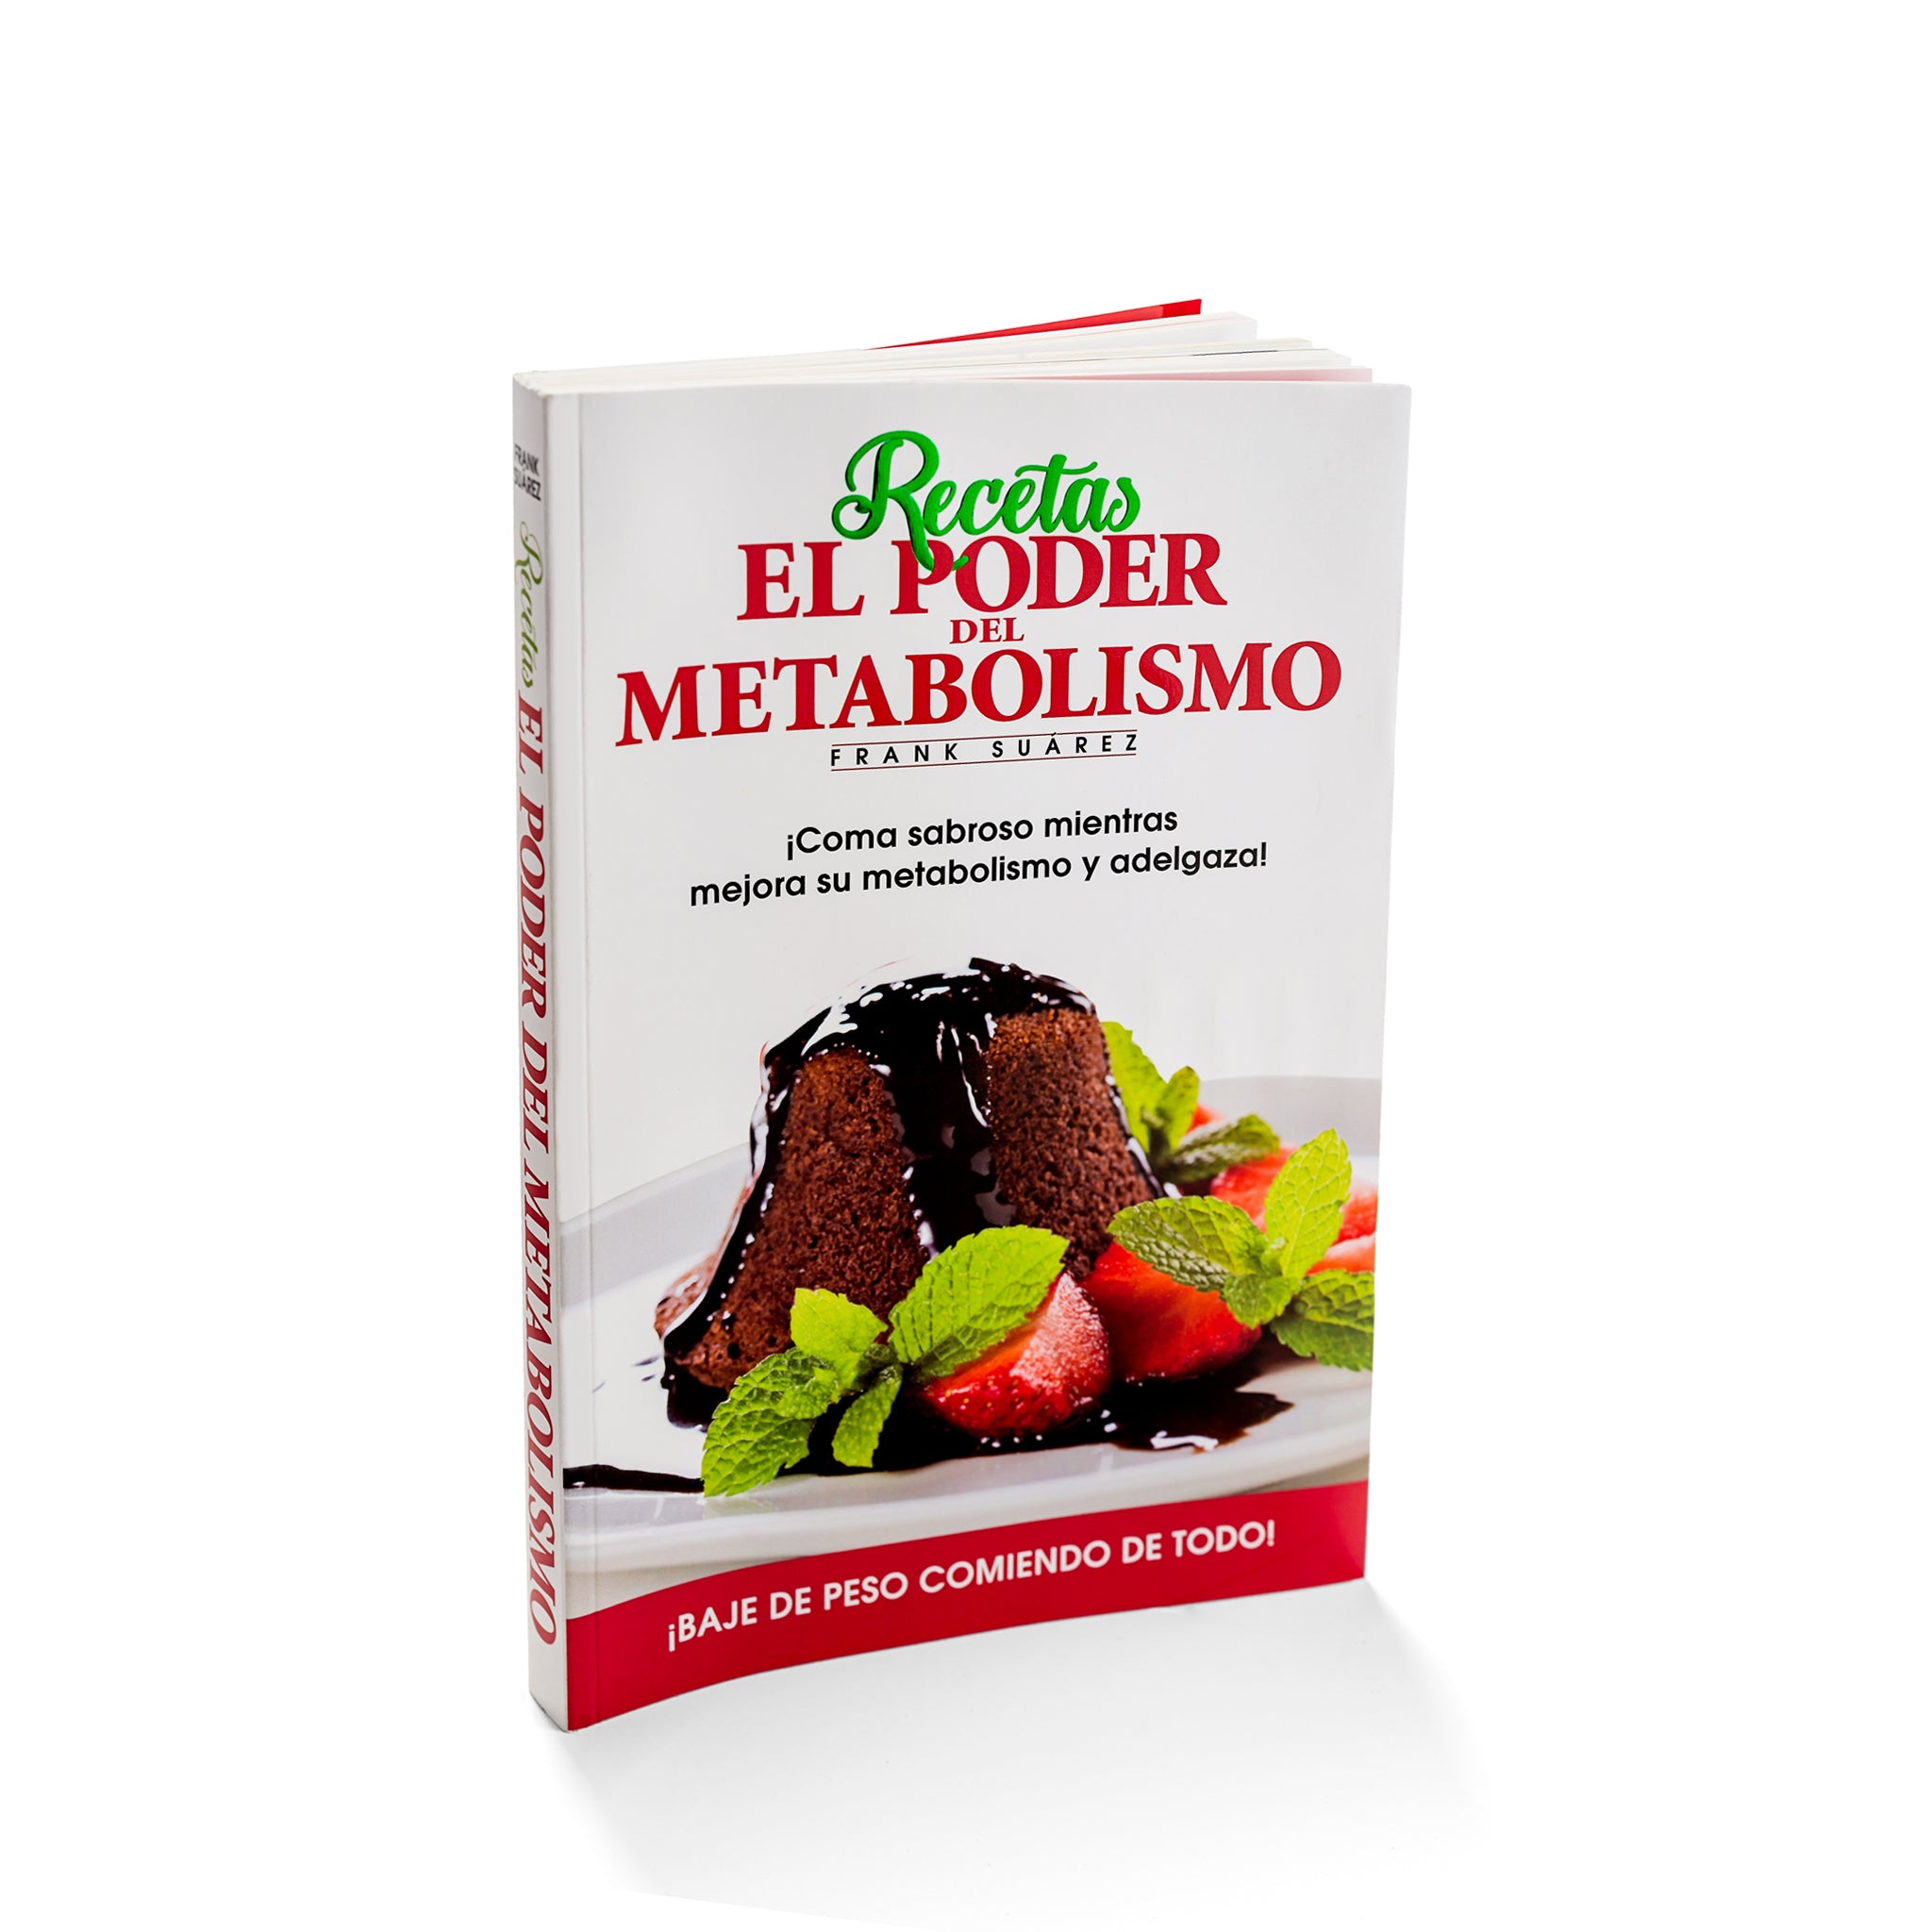 Librería Entrepáginas on Instagram: Frank Suárez Todos los libros del  autor best seller El poder del metabolismo $15.900 Metabolismo ultra  poderoso $18.900 Diabetes sin problemas $19.900 Recetas El poder del  metabolismo $14.900